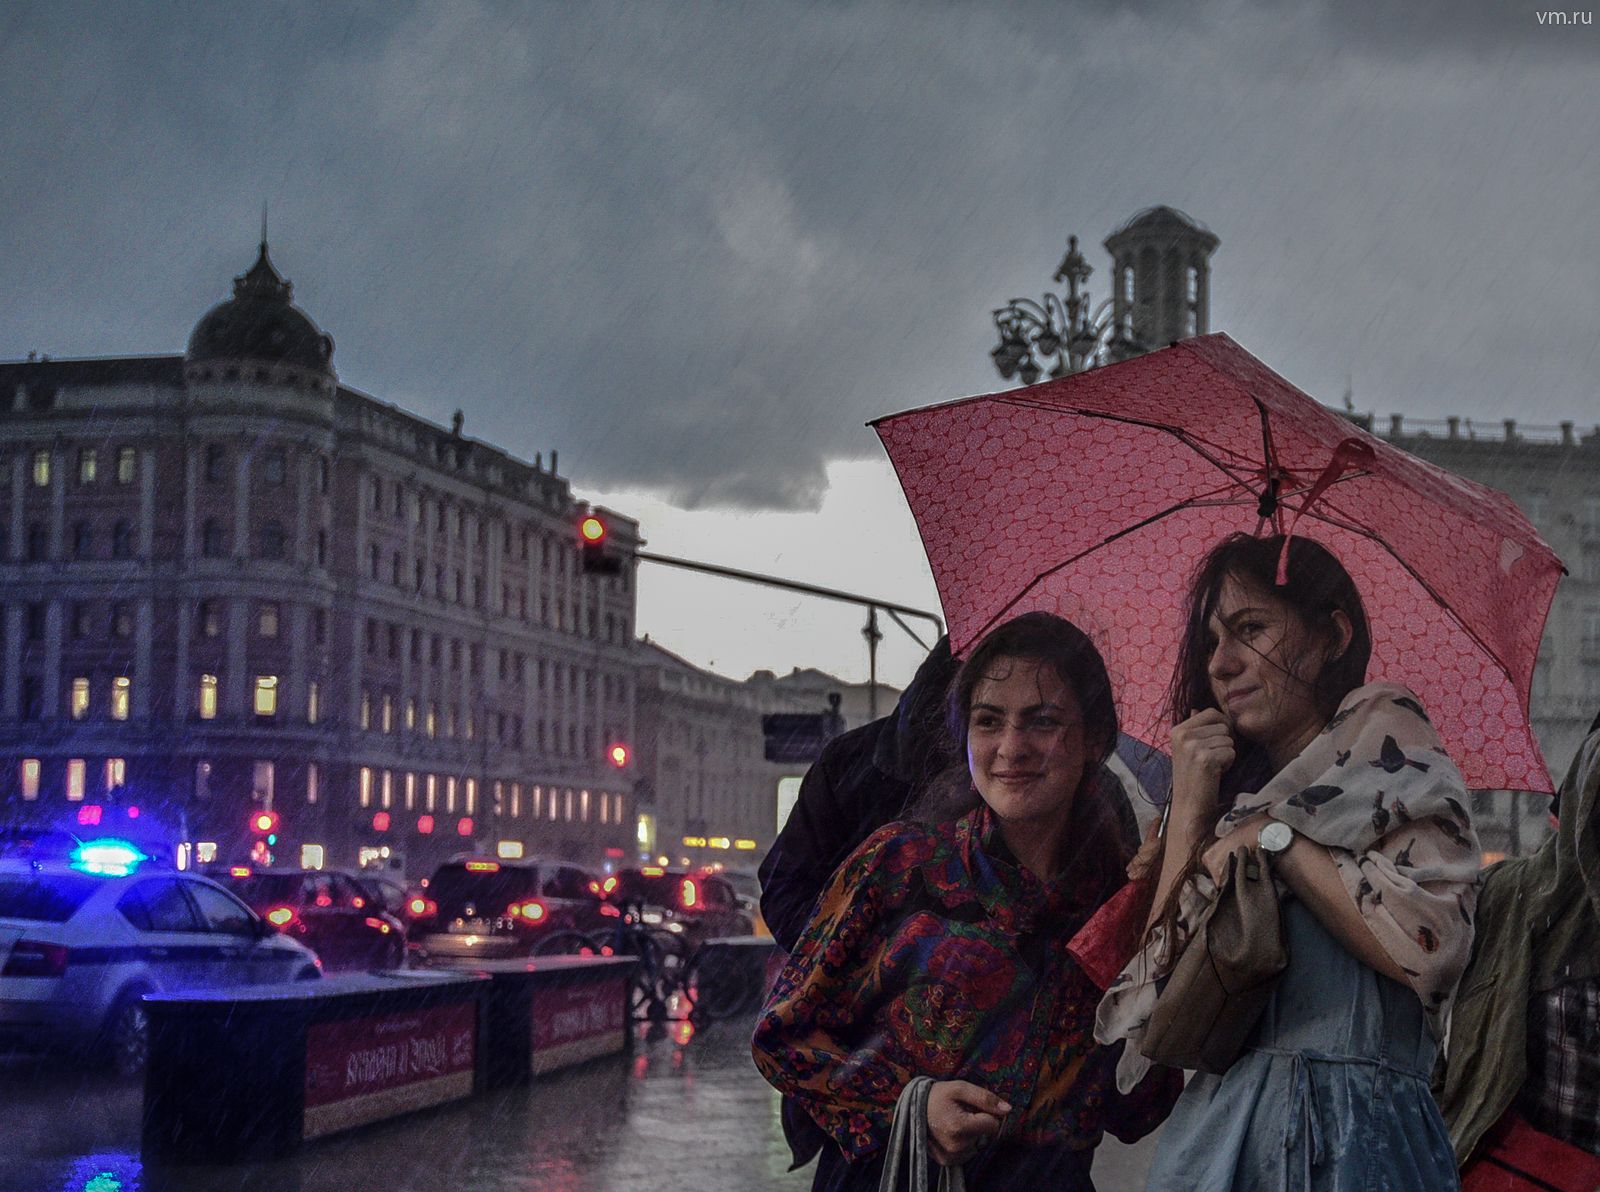 Жителей столичного региона предупредили о непогоде. Фото: Пелагия Замятина, «Вечерняя Москва»